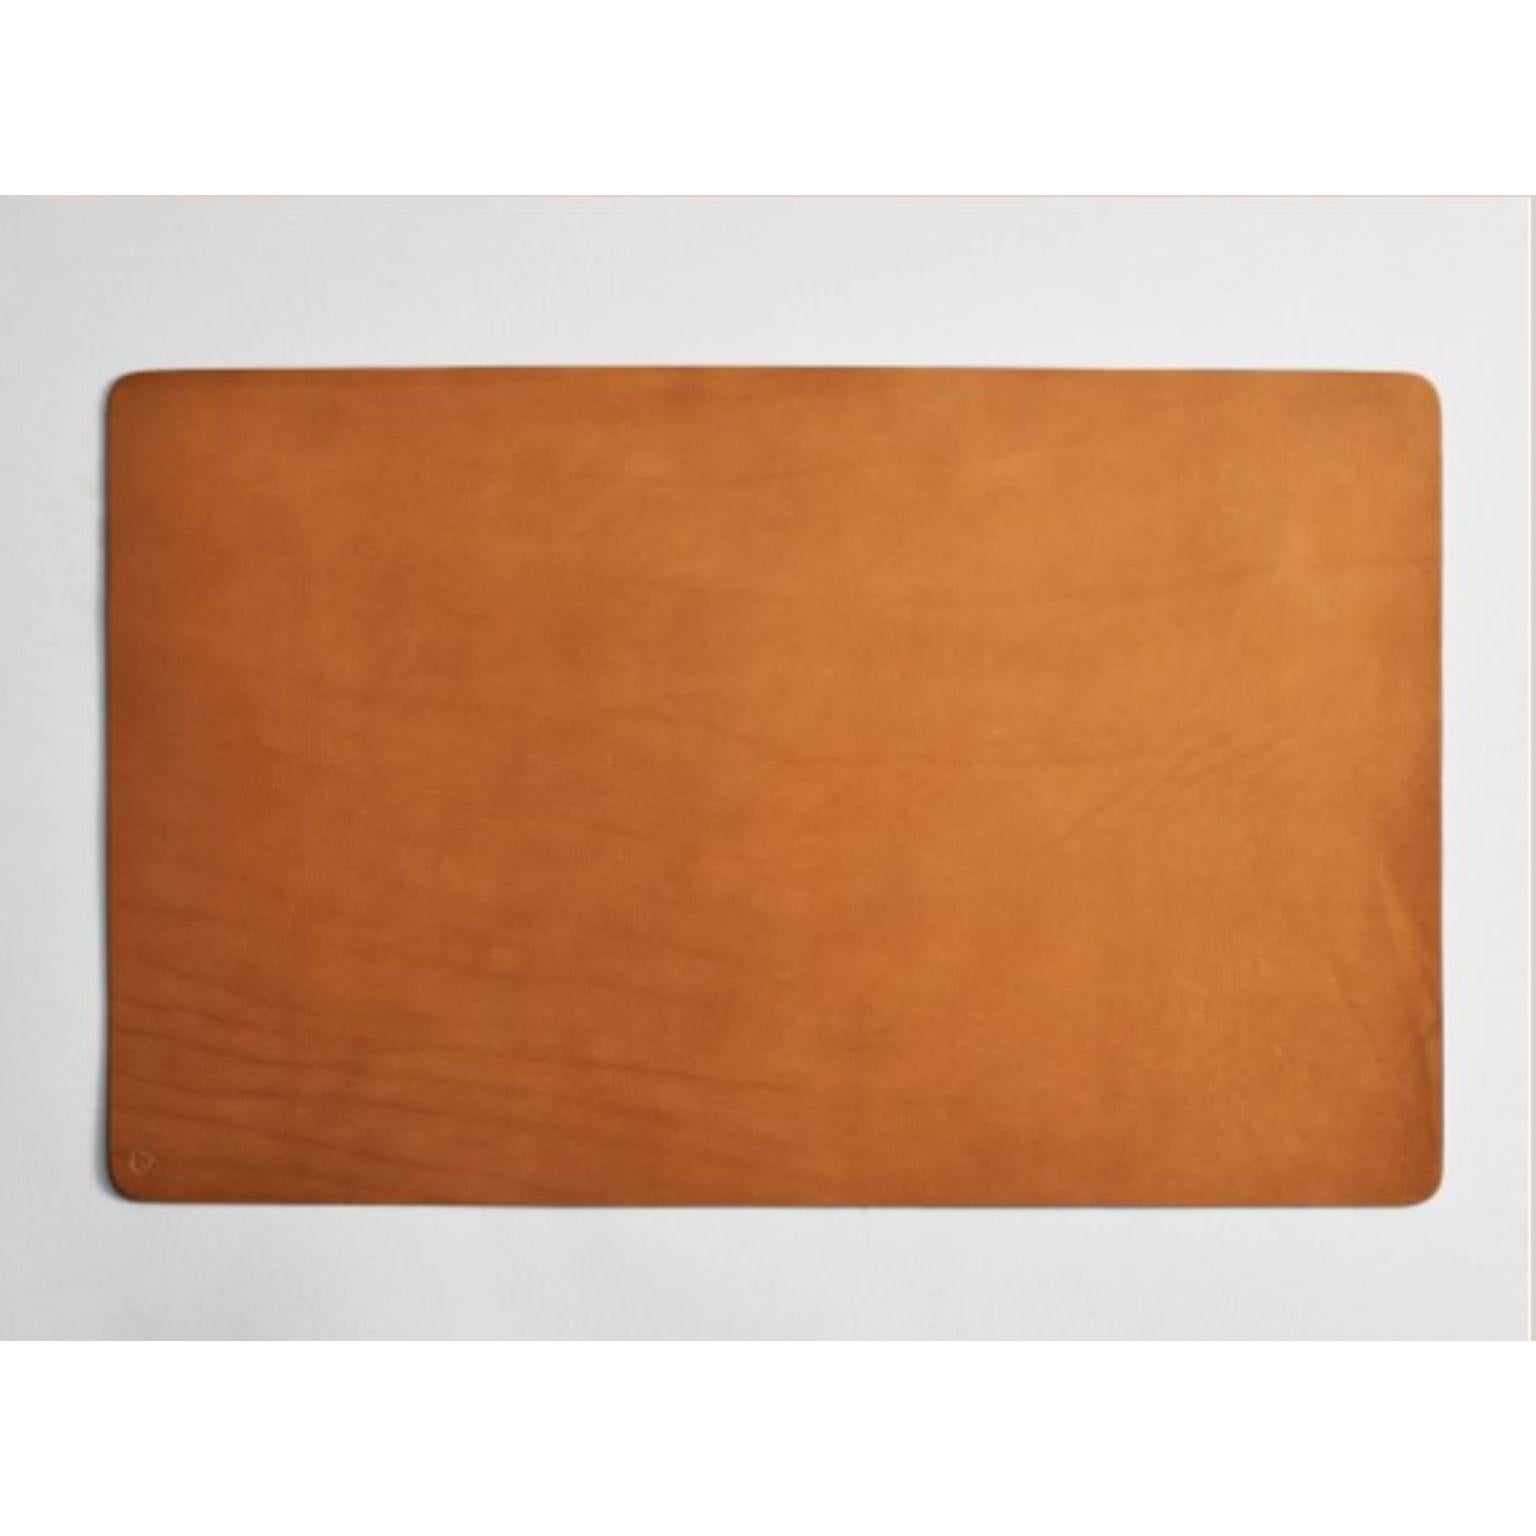 Australian Leather Desk Mat Tan by Henry Wilson